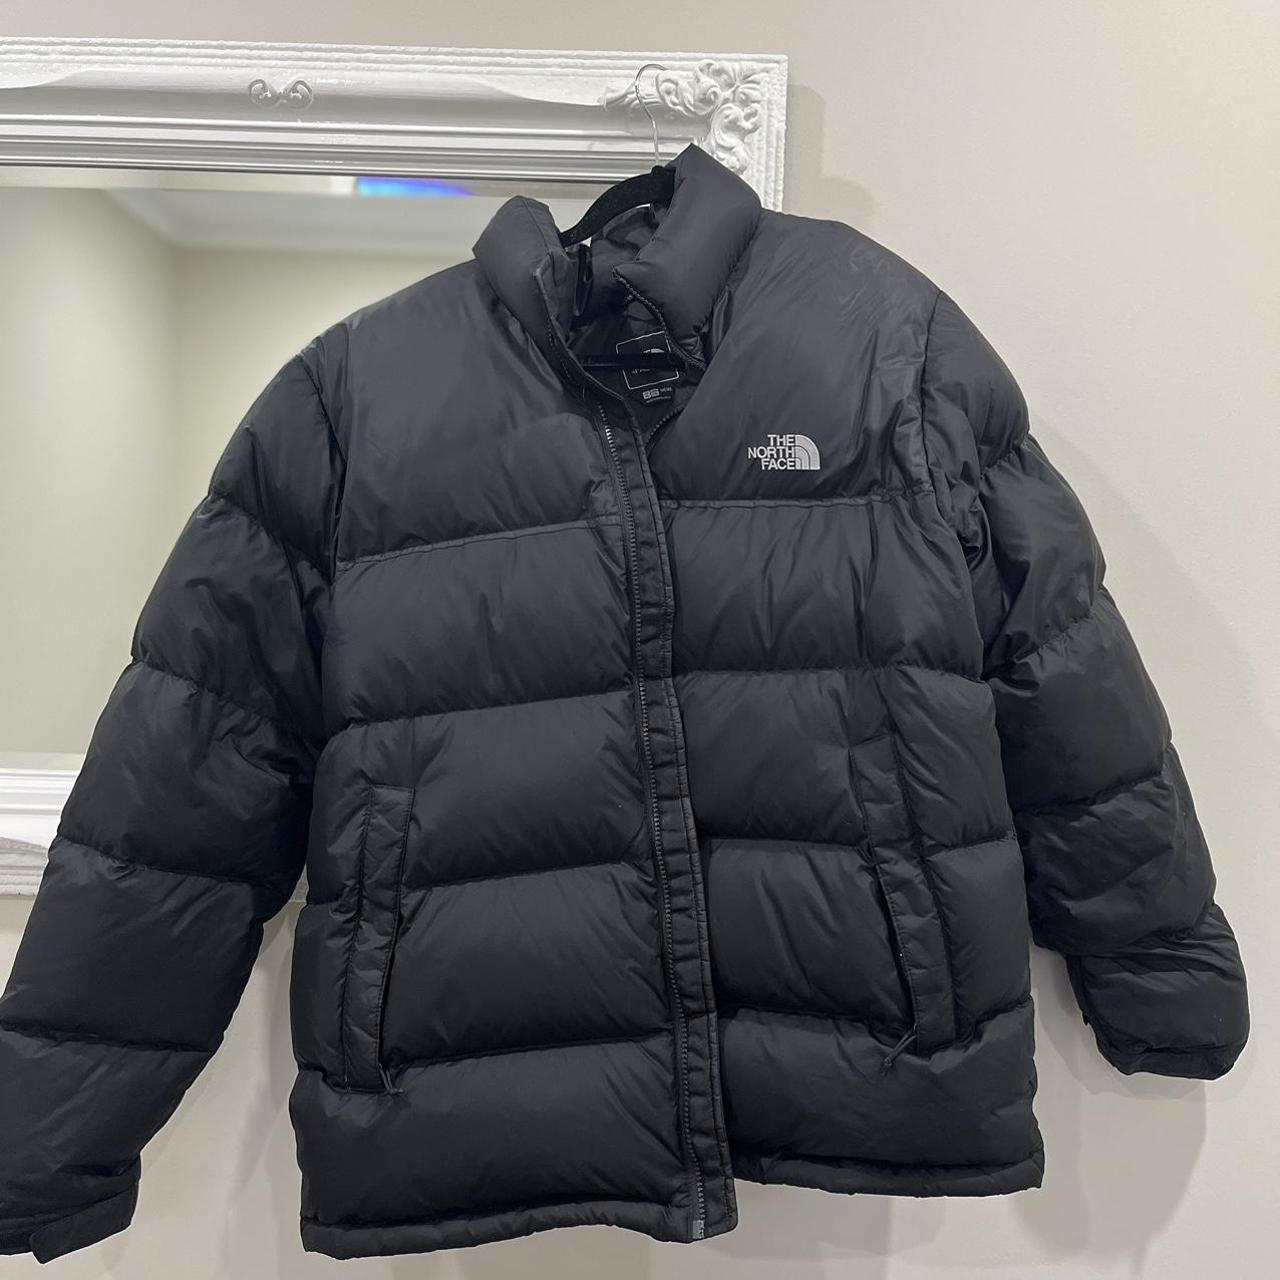 North Face Puffer Jacket Genuine down - super warm... - Depop